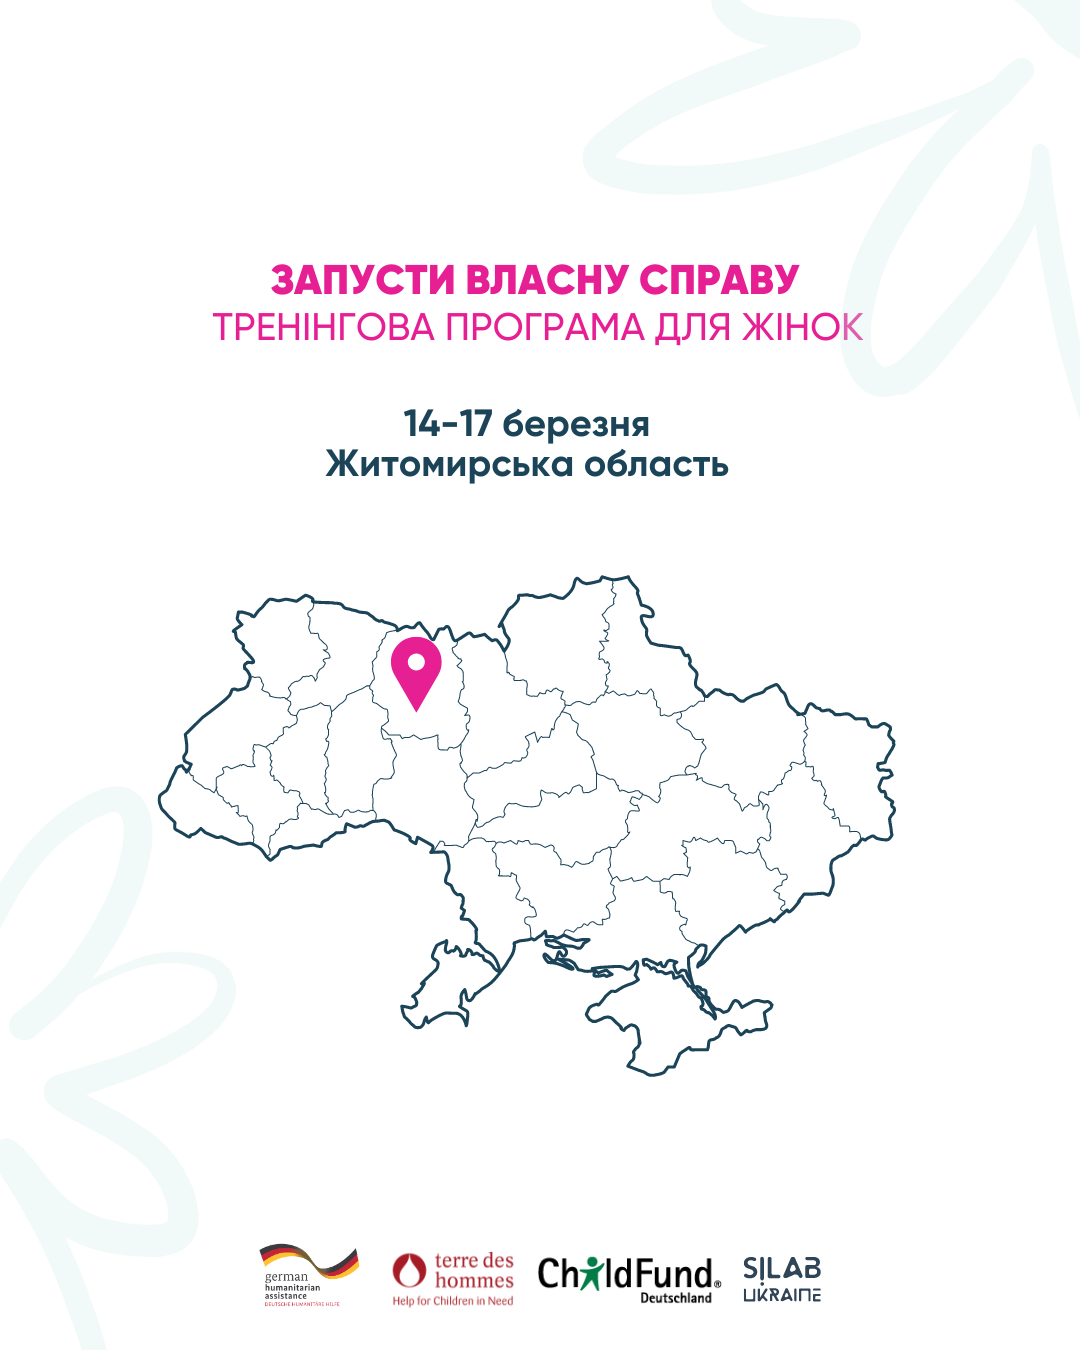 У Житомирській області пройде програма для жінок “Запусти власну справу”